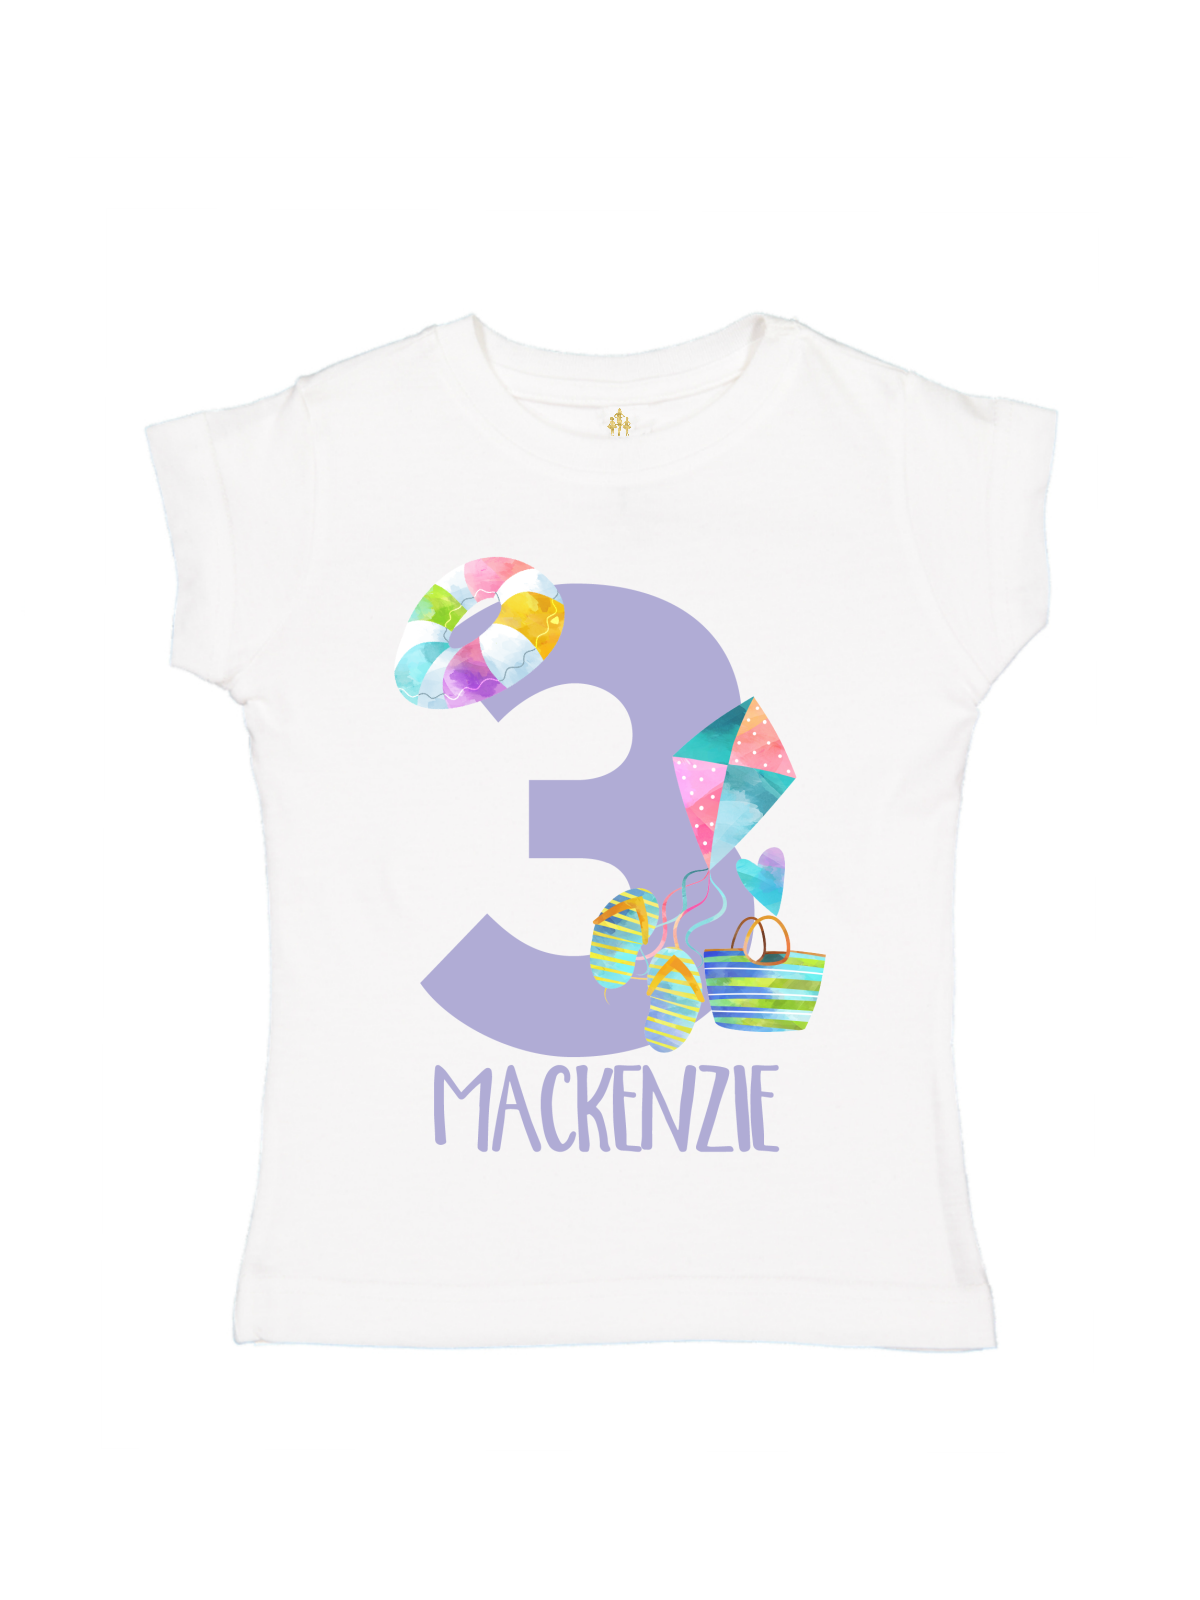 girls personalized beach birthday shirt